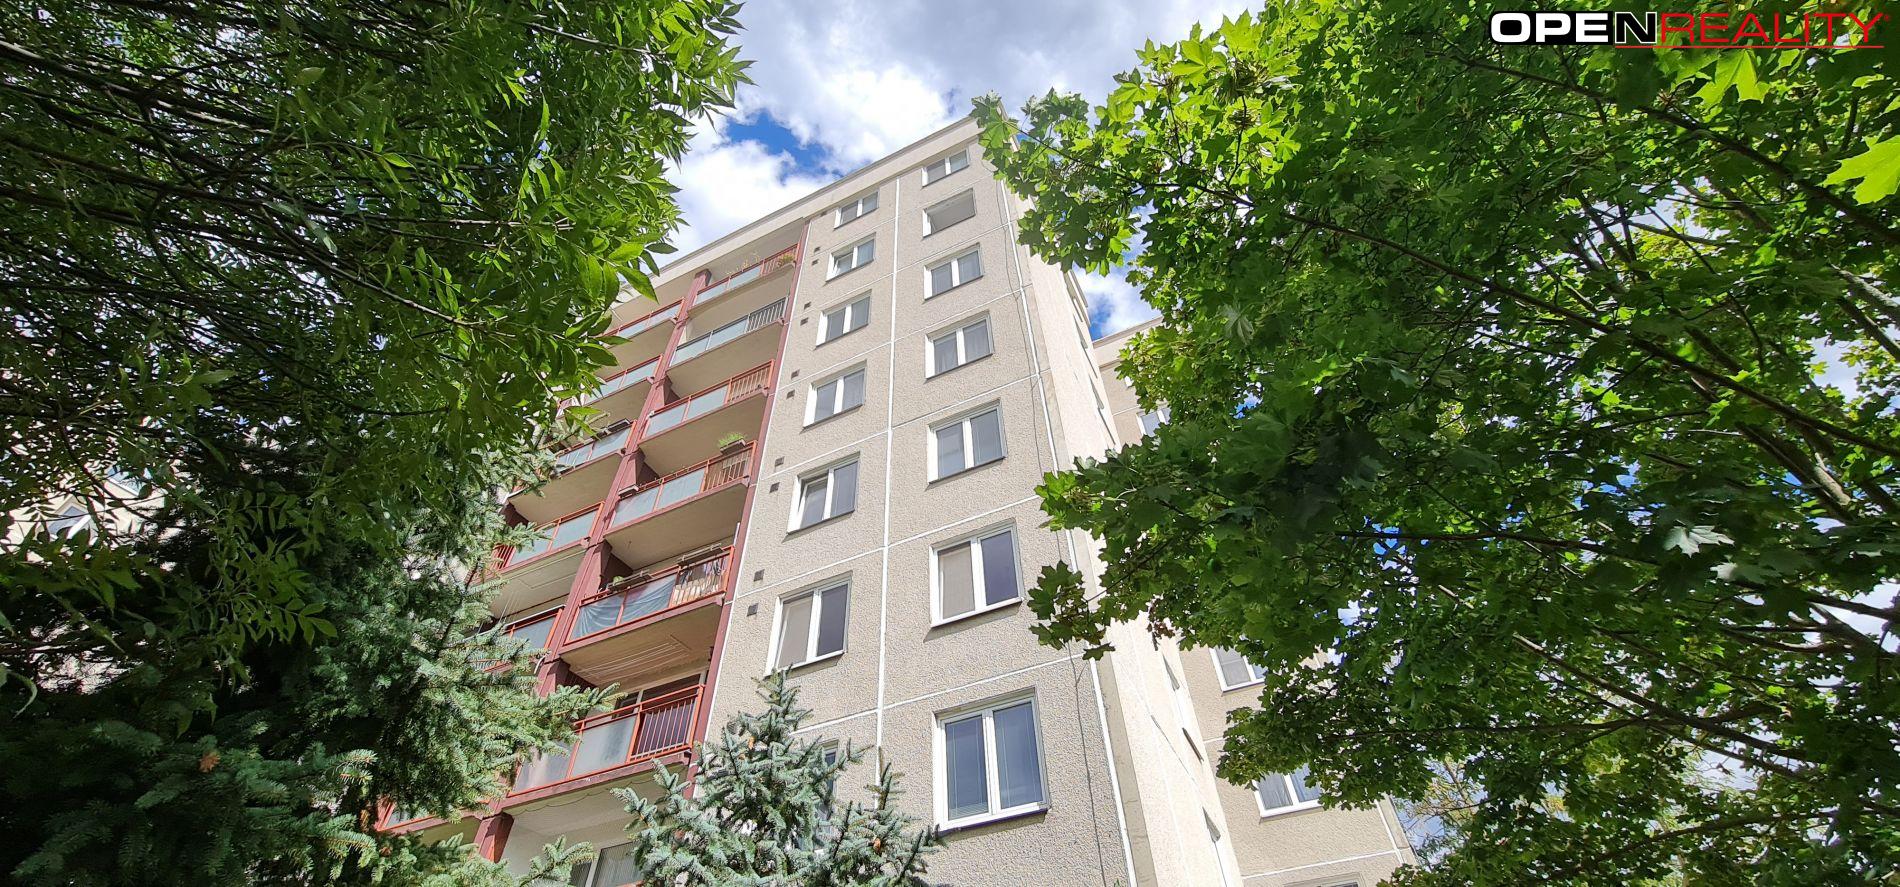 Prostorný byt 3+1 o velikosti 64,5 m2 v Brně-Bohunicích na ulici Vedlejší.